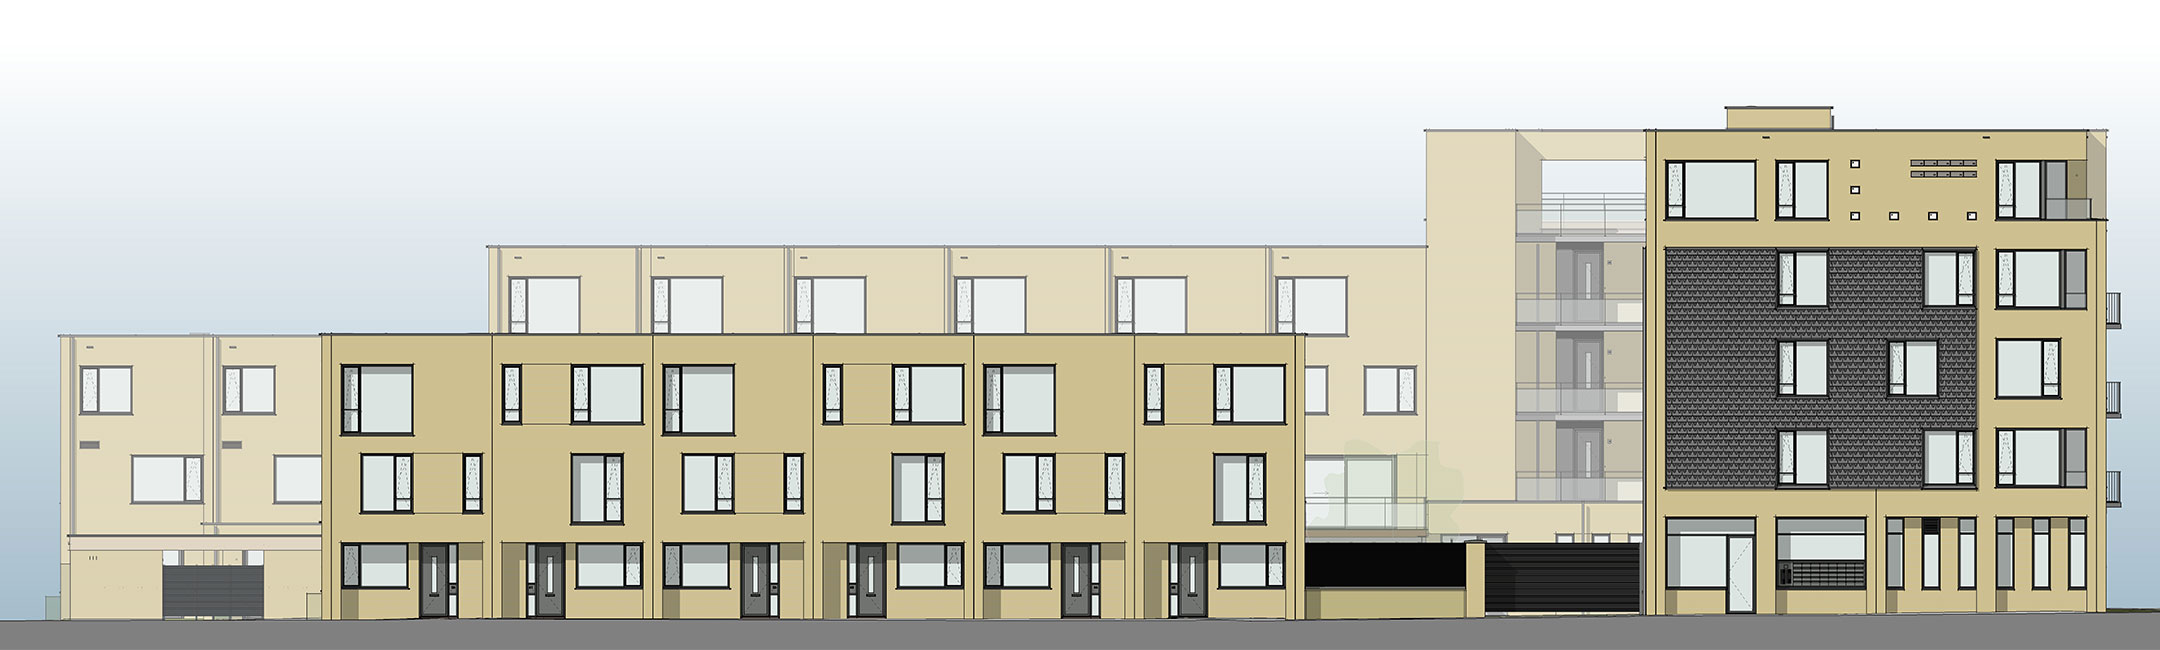 Haringlocatie Delft appartementencomplex BIM aanzicht gevel